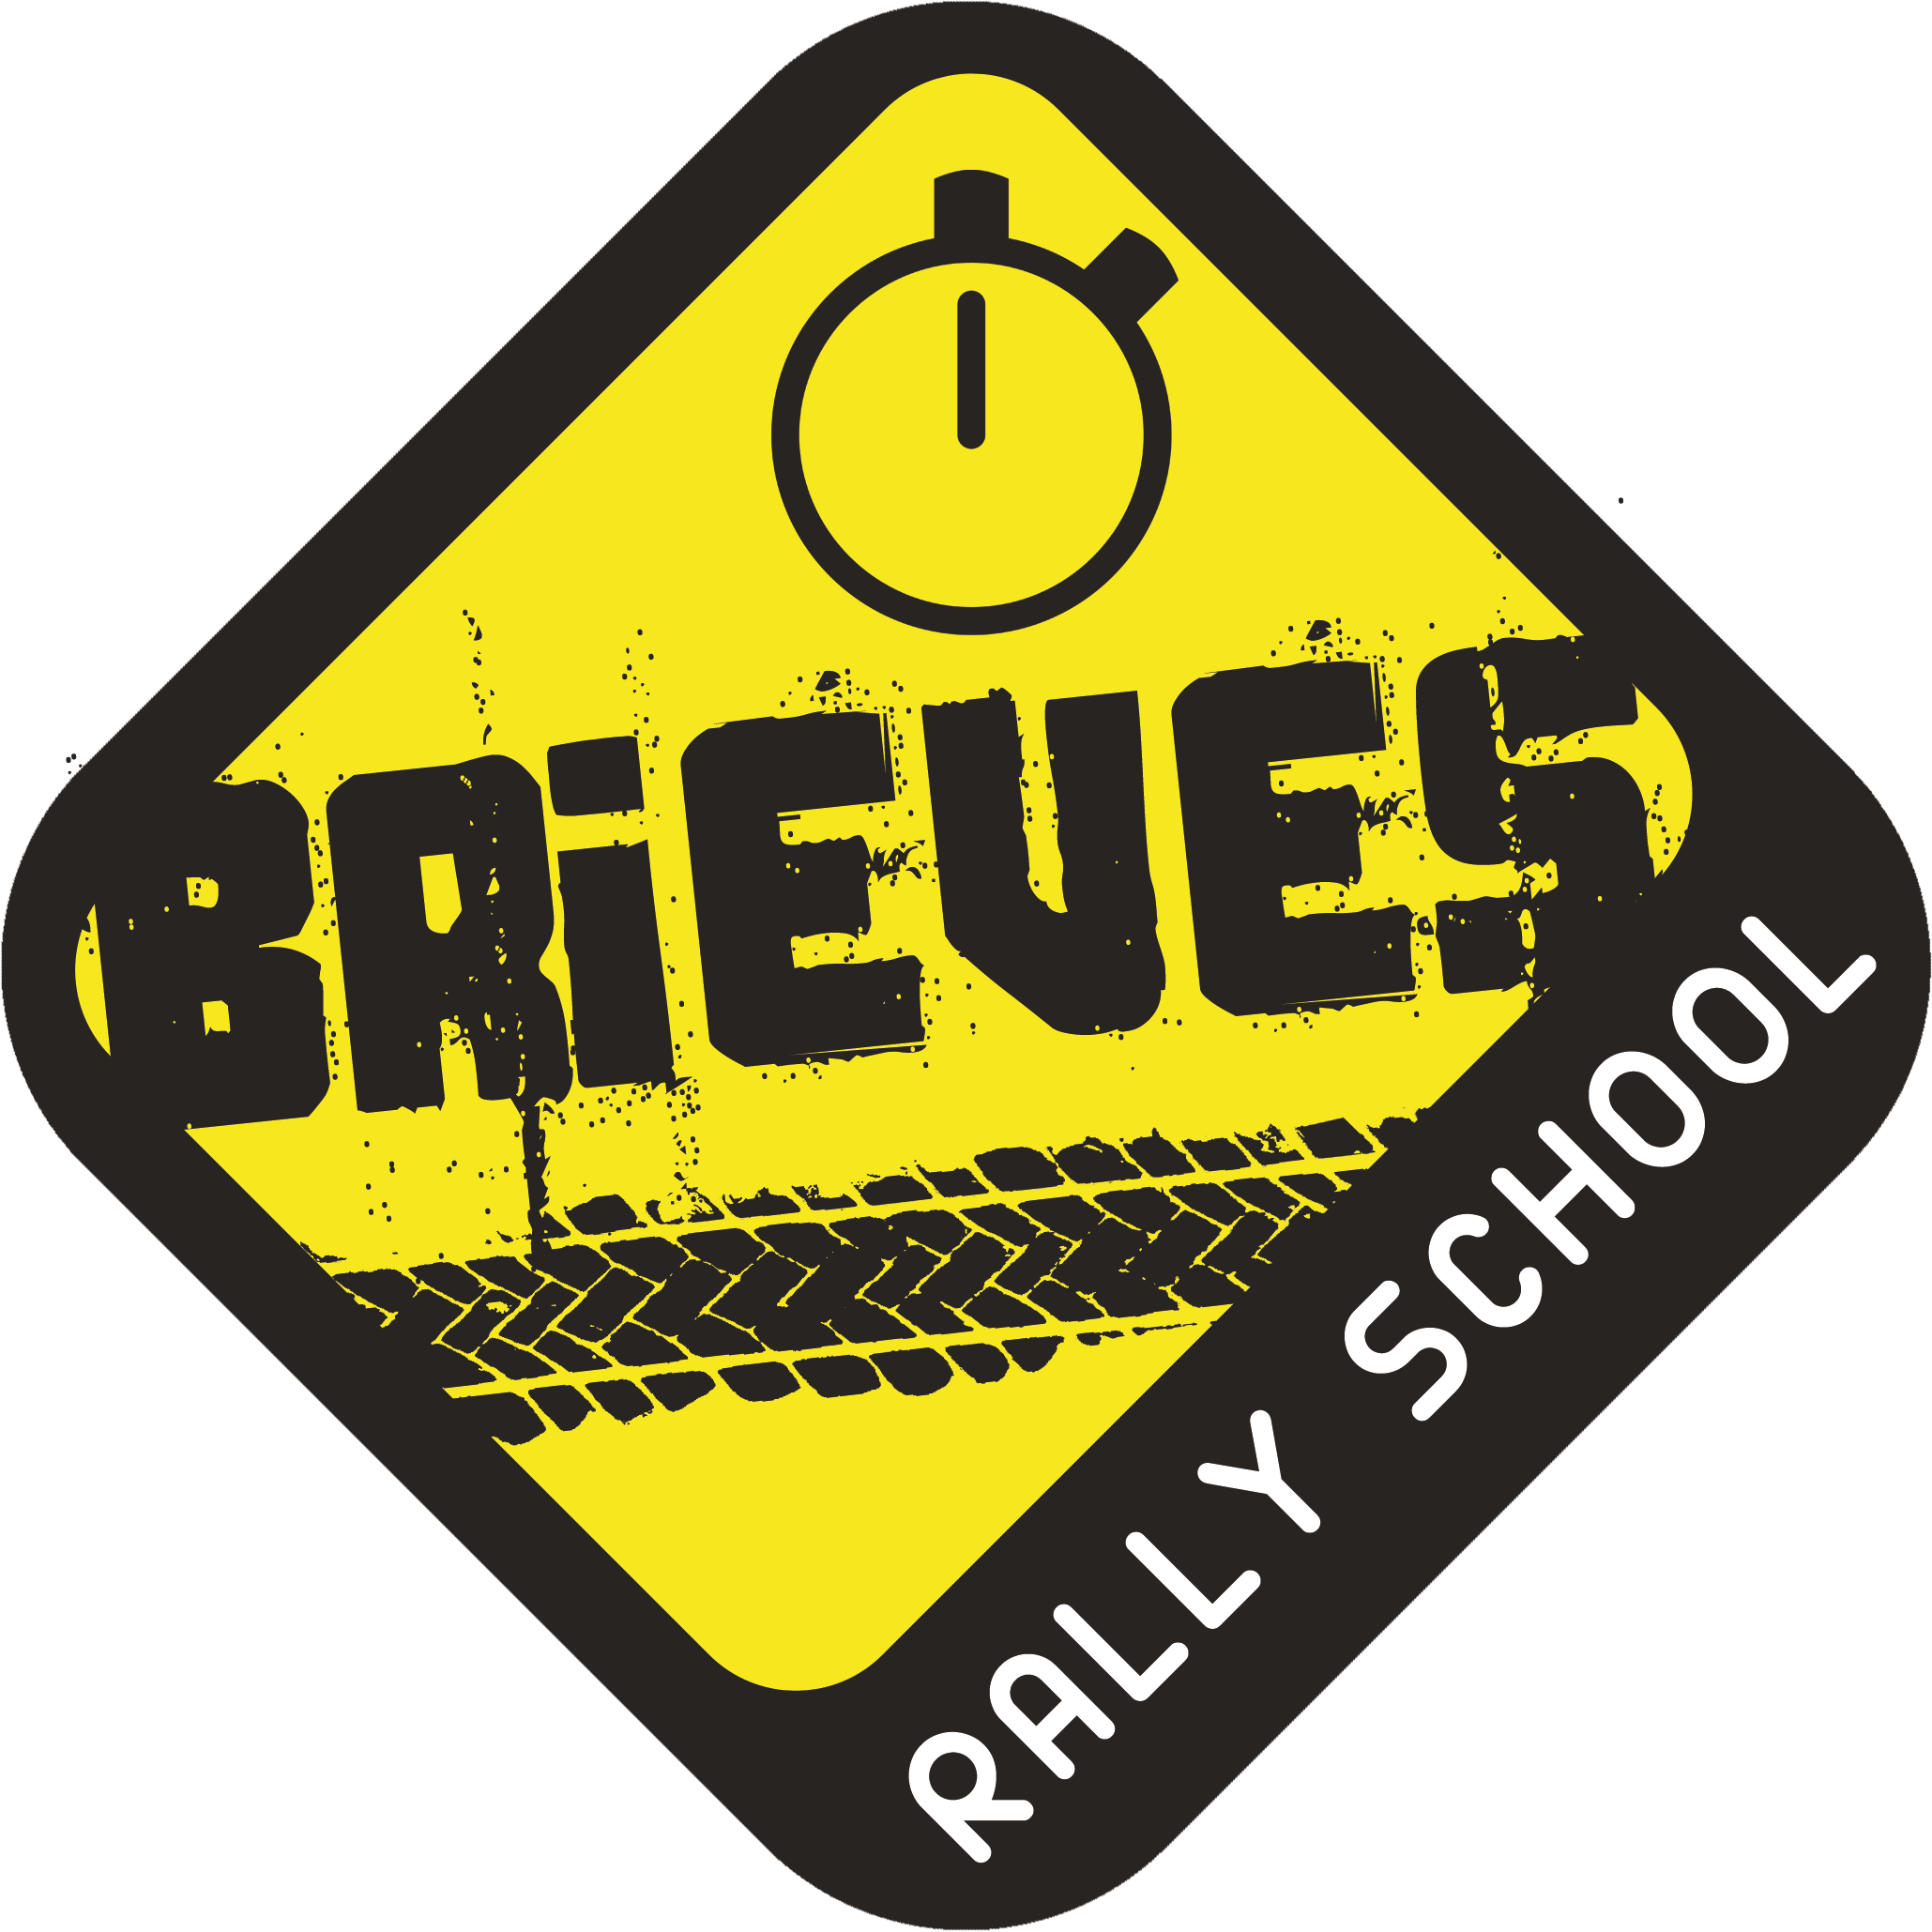 Brieves_RallySchool (1)